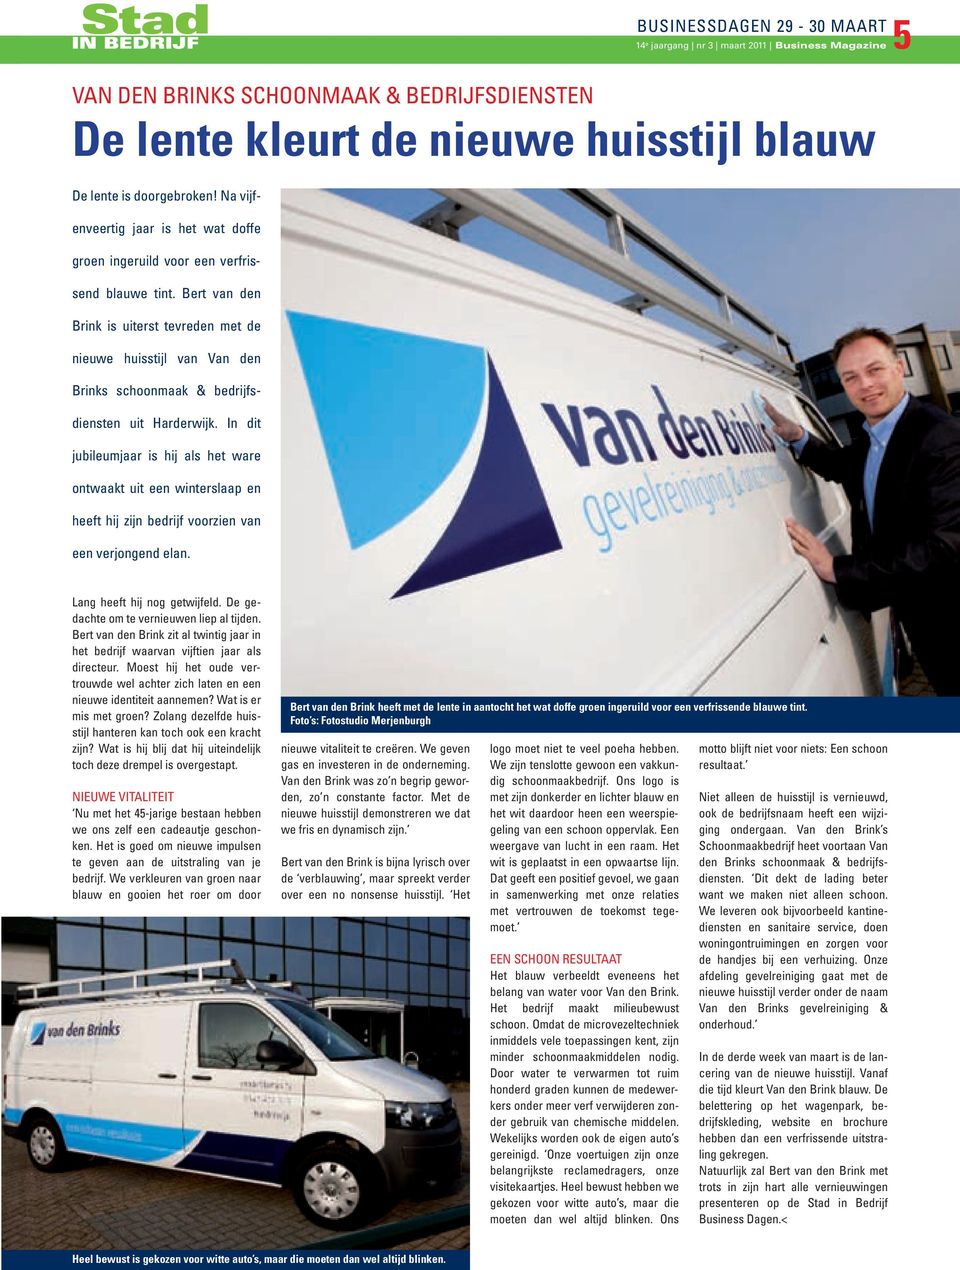 Bert van den Brink is uiterst tevreden met de nieuwe huisstijl van Van den Brinks schoonmaak & bedrijfsdiensten uit Harderwijk.